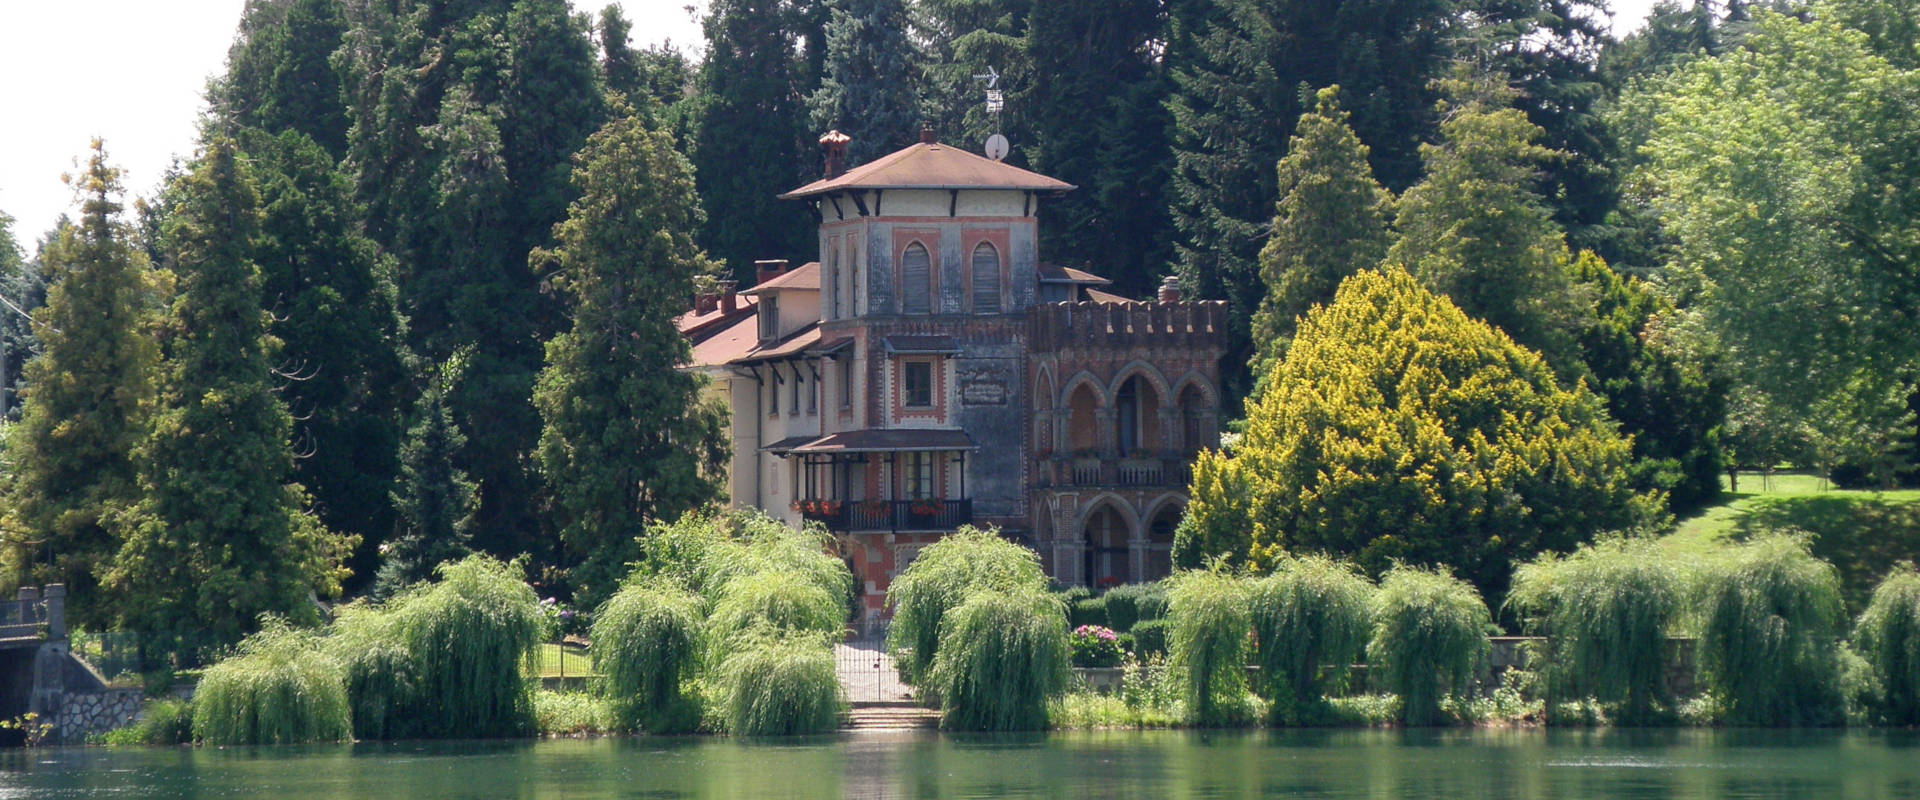 Sesto Calende - Villa Ticino